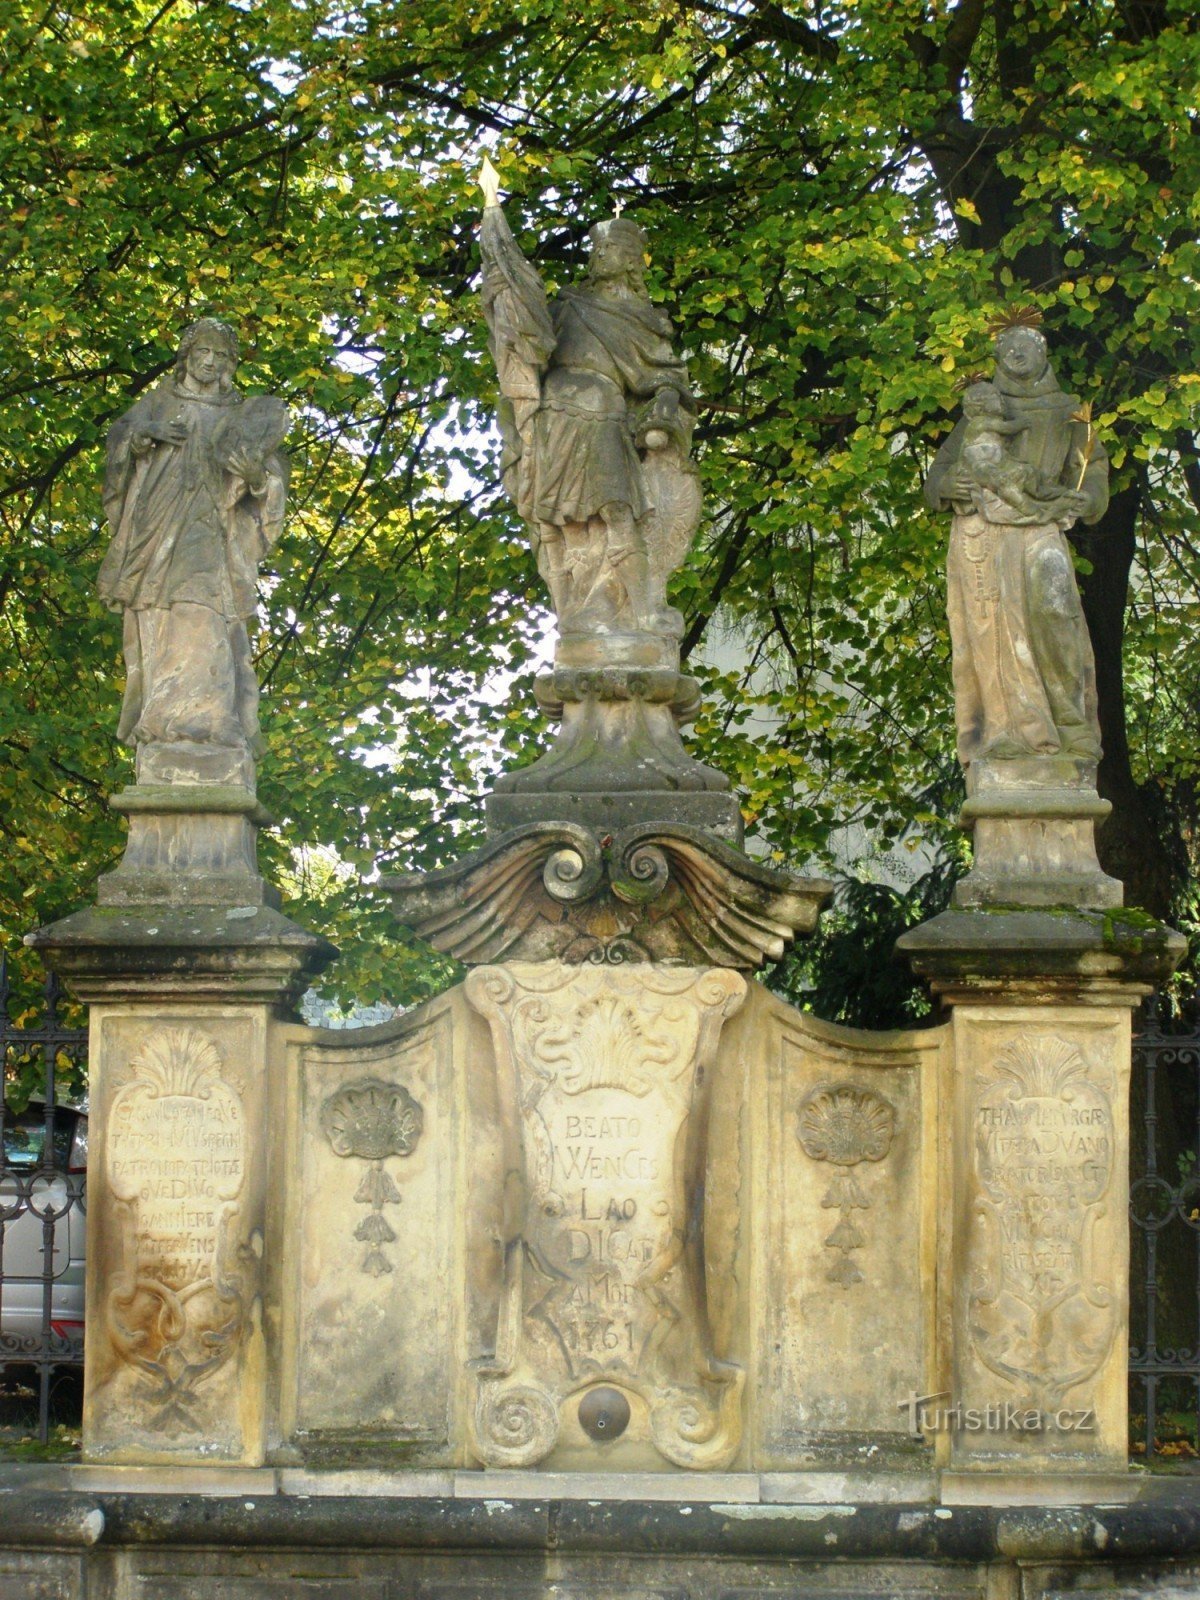 Turnov - fontanna z figurą św. Wacława